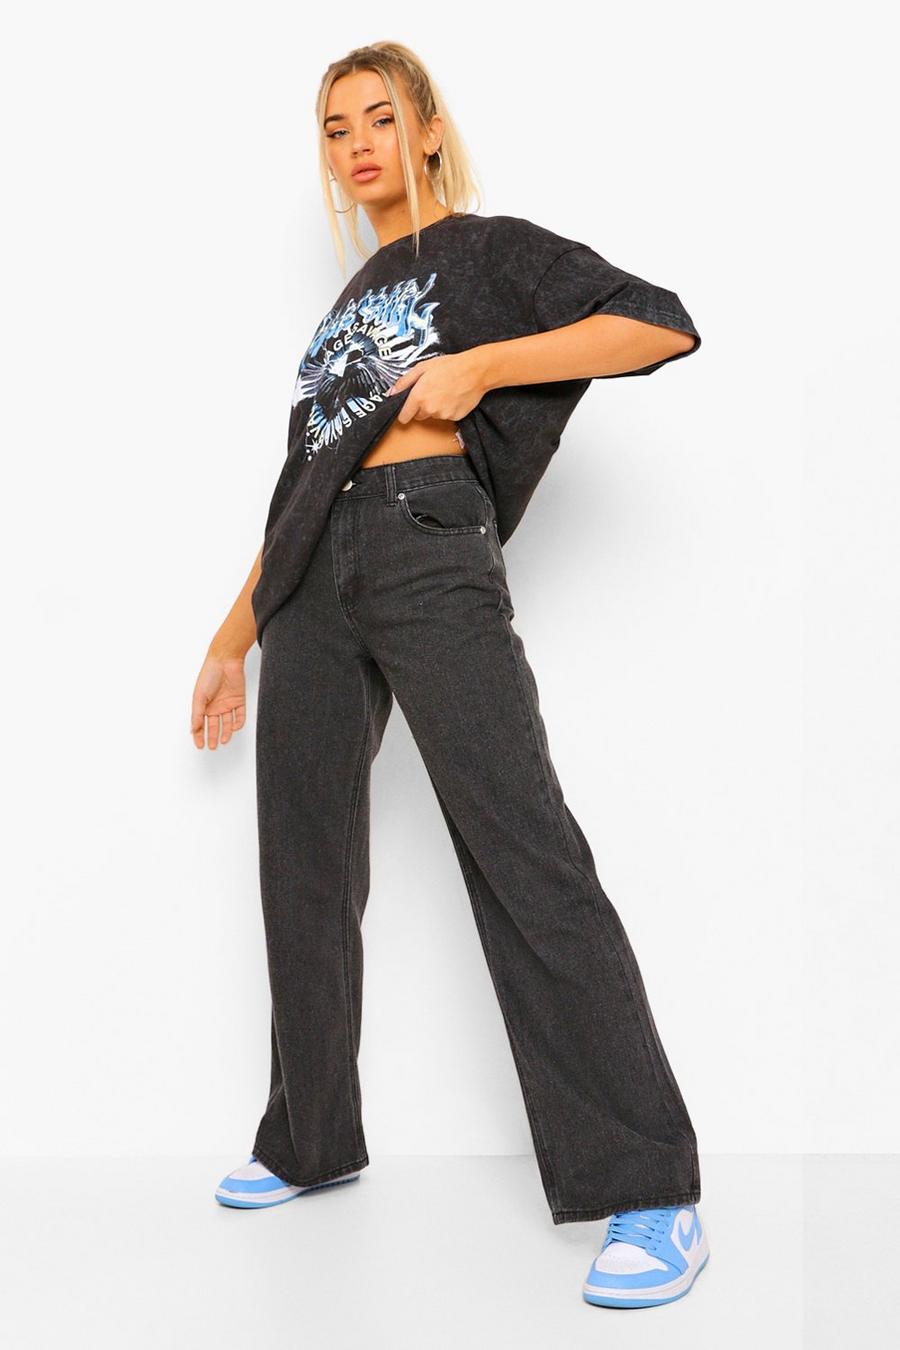 שחור negro ג'ינס בייסיק מבד נמתח בגזרה רחבה מחמיאה